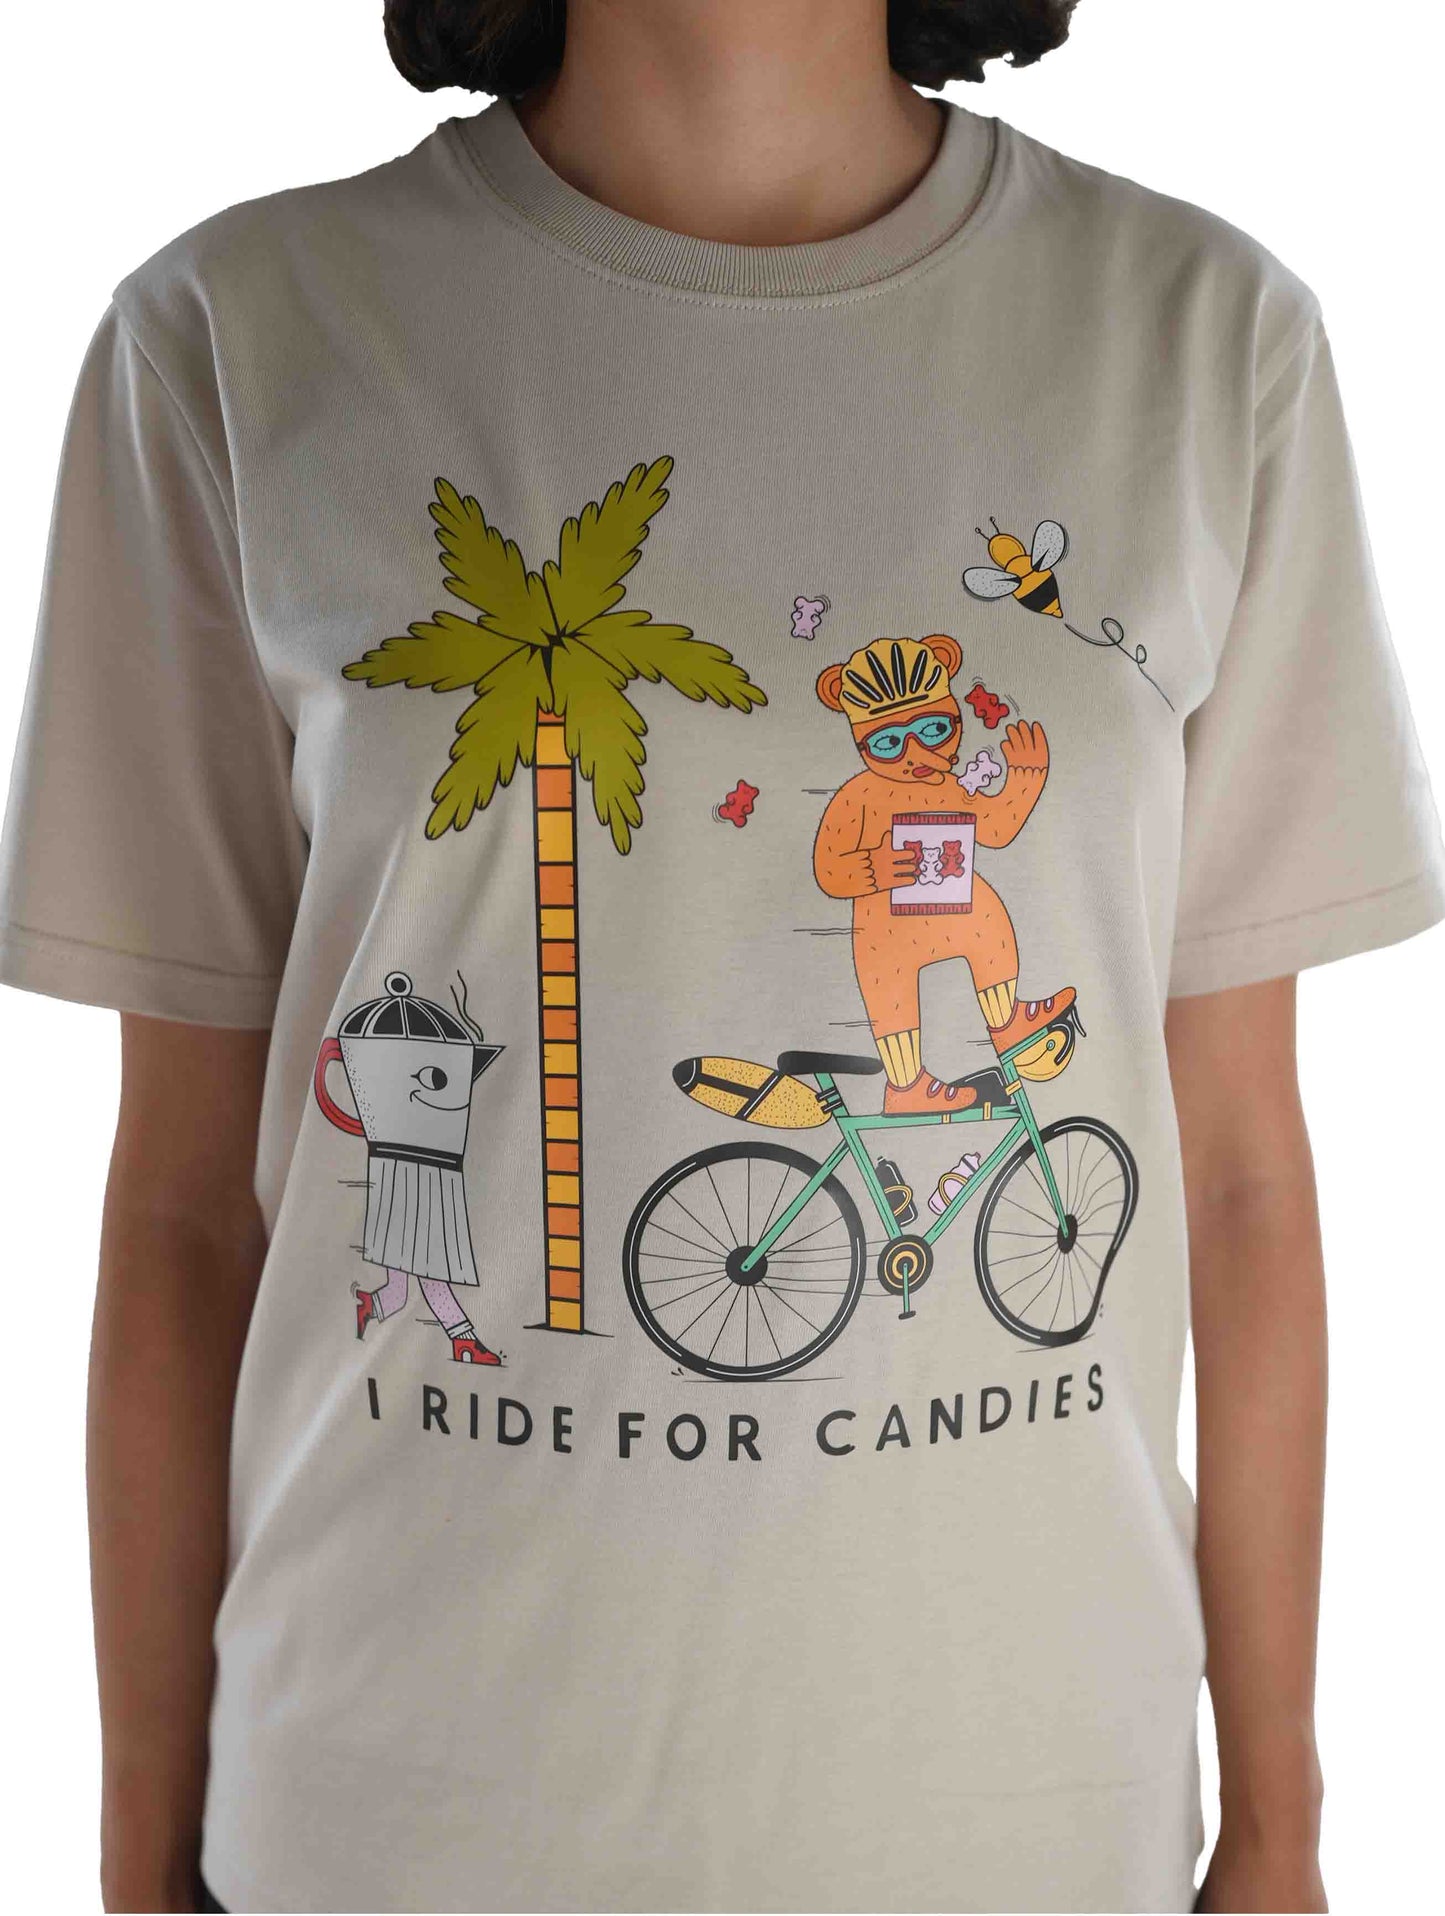 Buzzalong x Sasa Ostoja Limited Edition Cycling T-Shirt